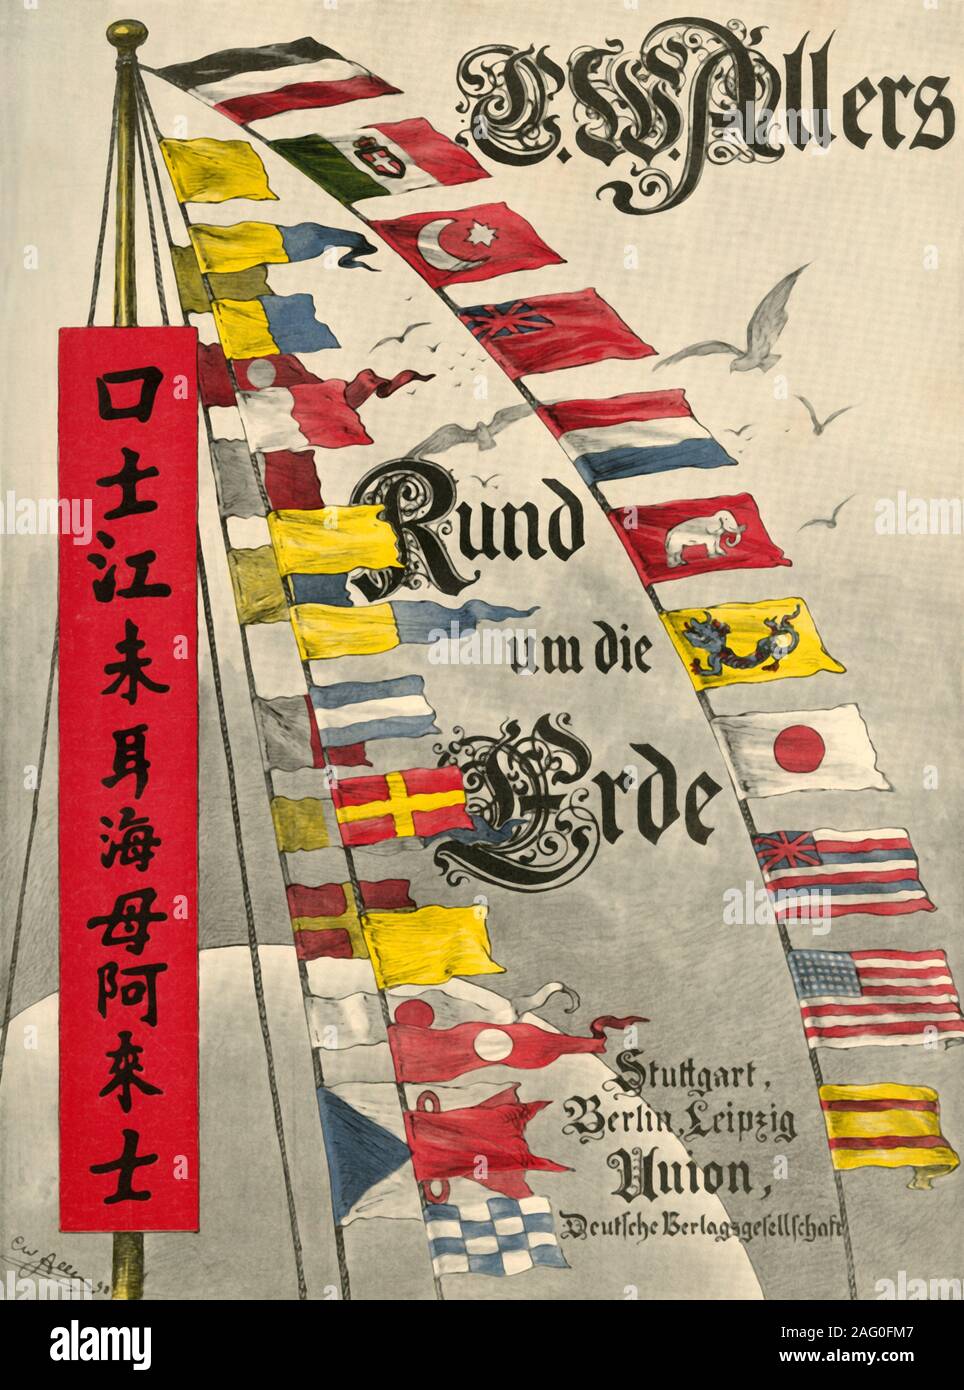 Banderas de señales marítimas internacionales, 1898. Página del título de "Rund um die Erde" [a la vuelta de la Tierra], escrito e ilustrado por C. W. Allers. [Unión Deutsche Verlagsgesellschaft, Stuttgart, 1898] Foto de stock